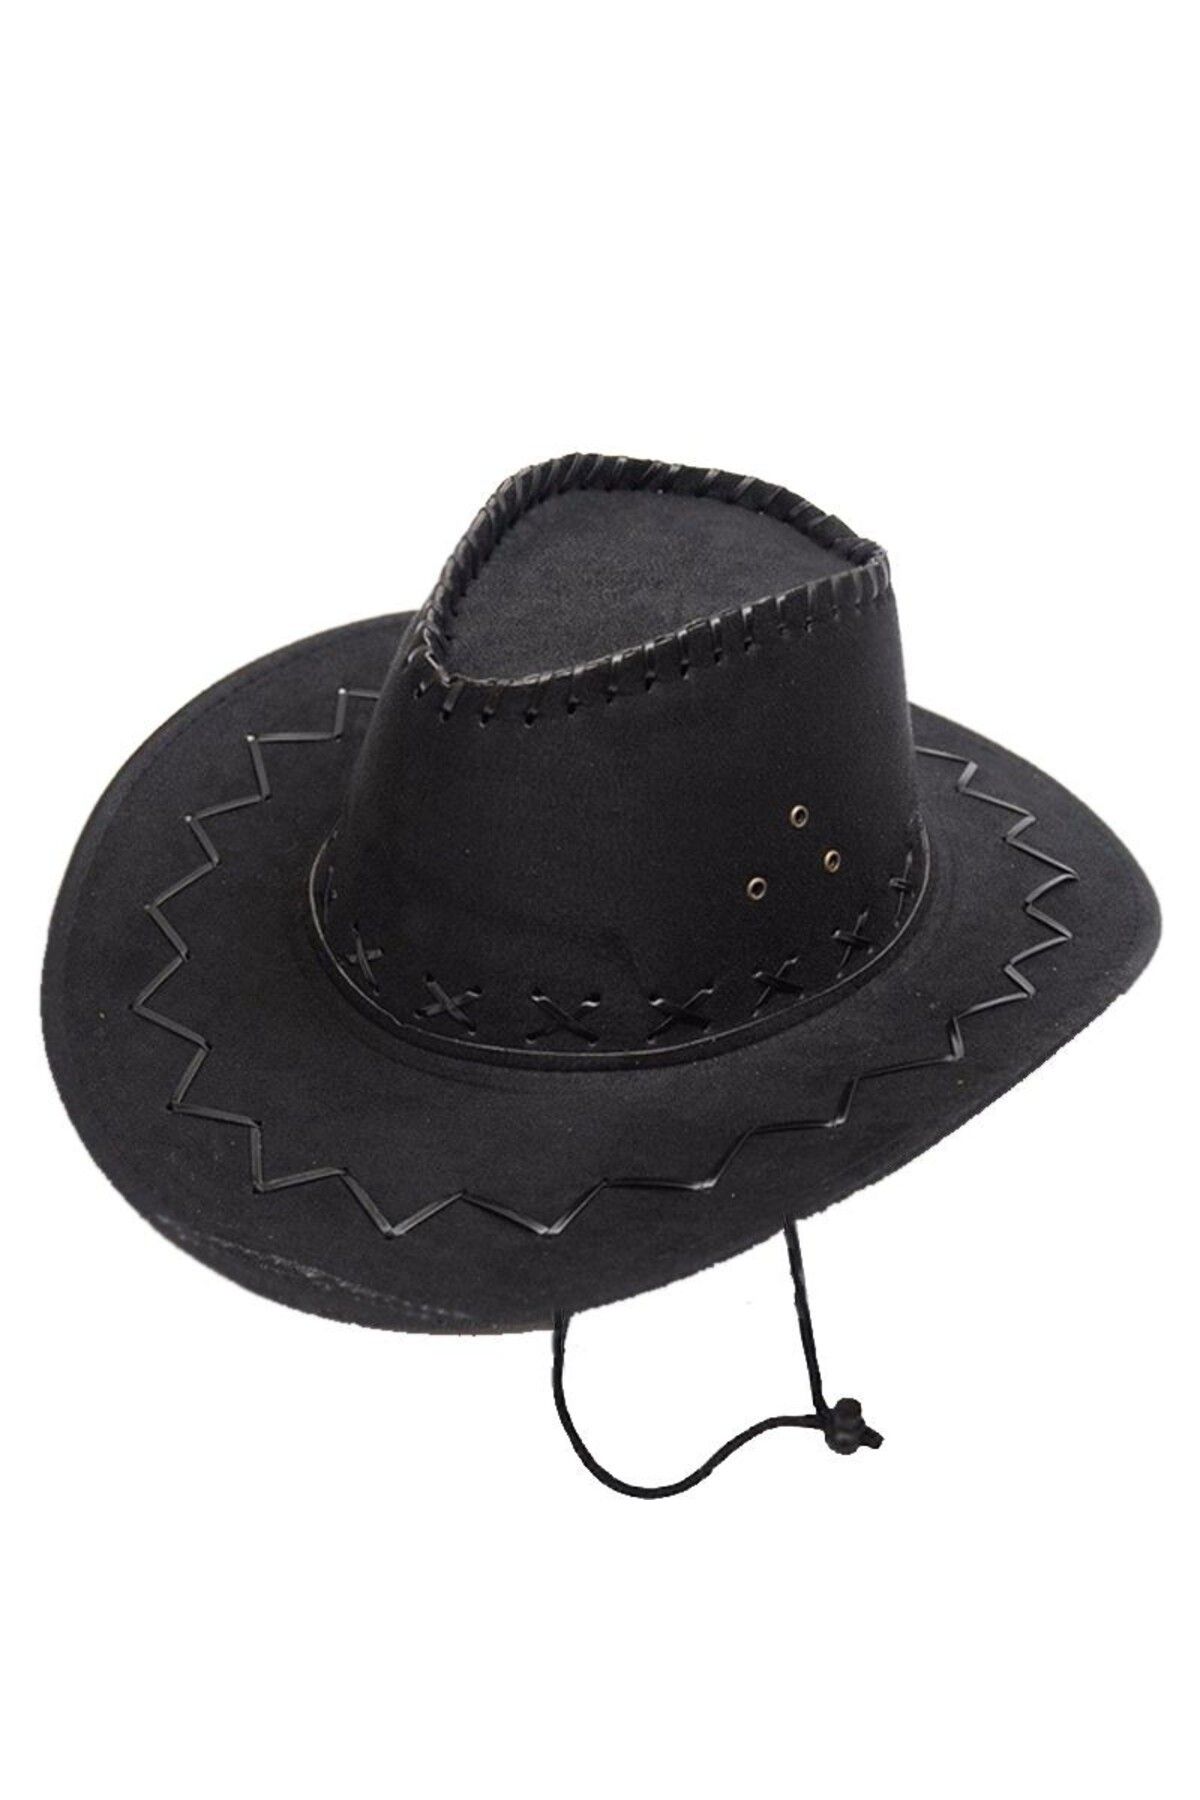 ShopZum Bağcıklı Çocuk Boy Nubuk Süet Kovboy Şapkası Siyah Renk